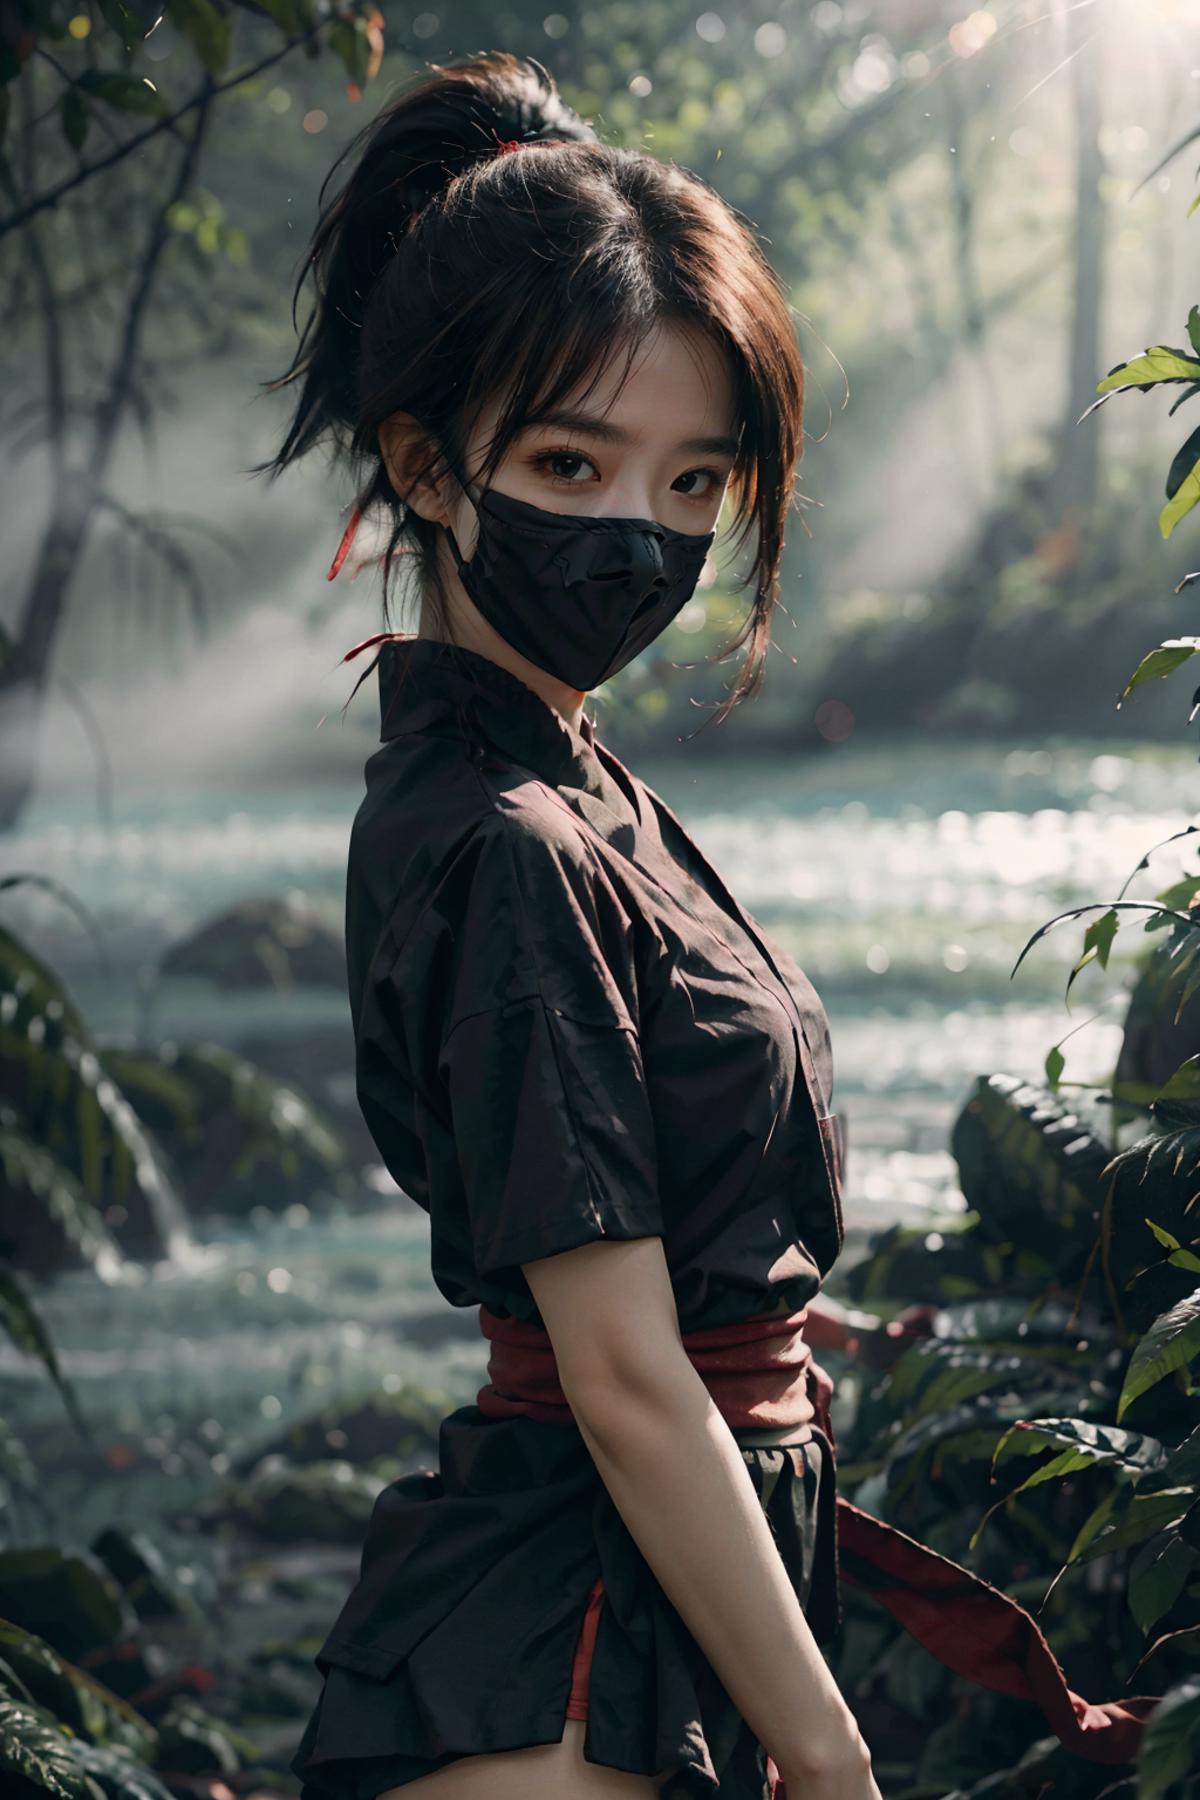 Ninjagirl_v1.0 image by Cycllops